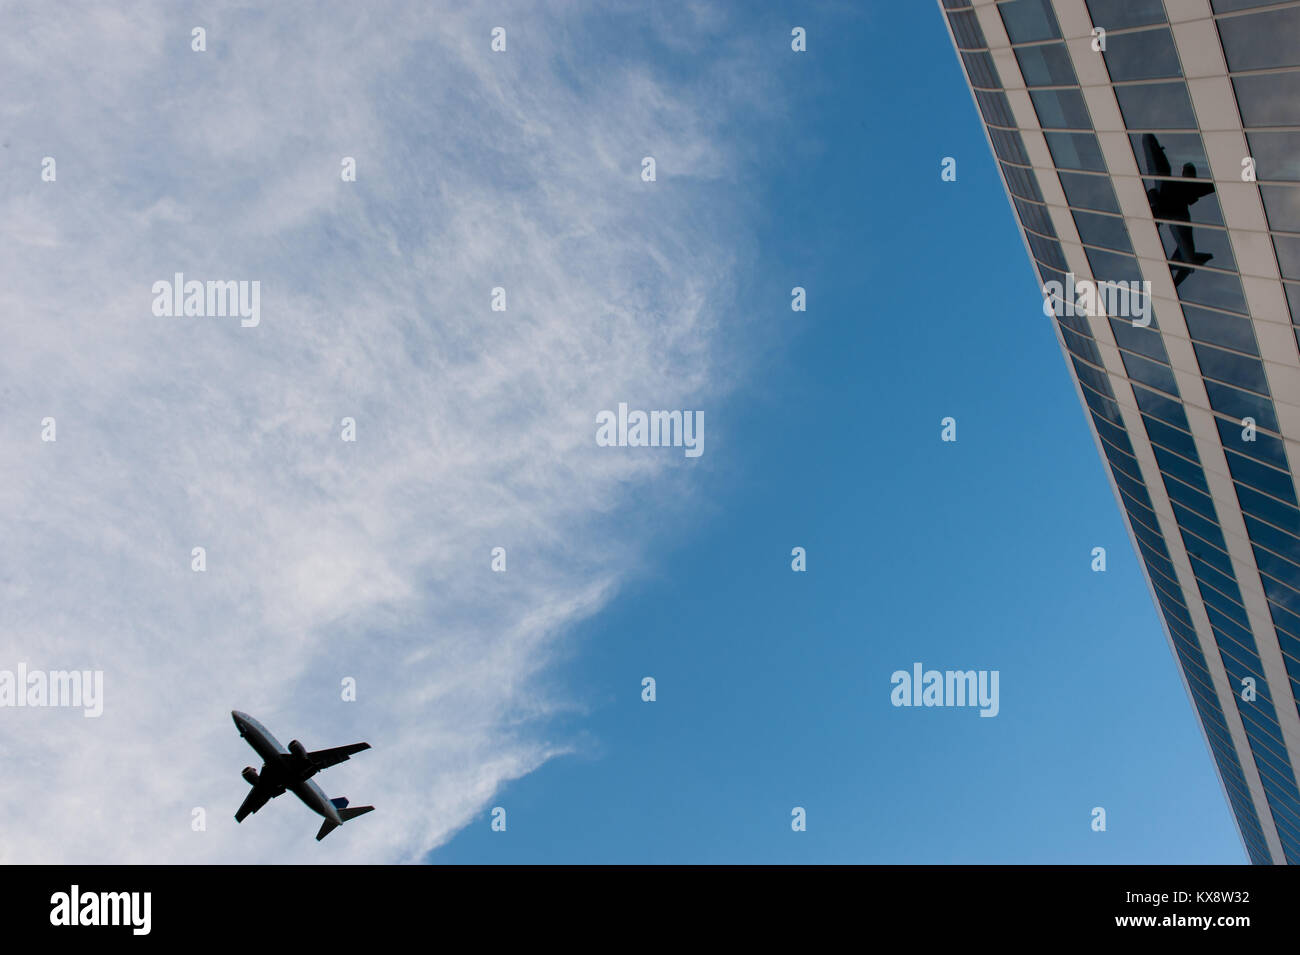 Plane in landing passenger plane Stock Photo